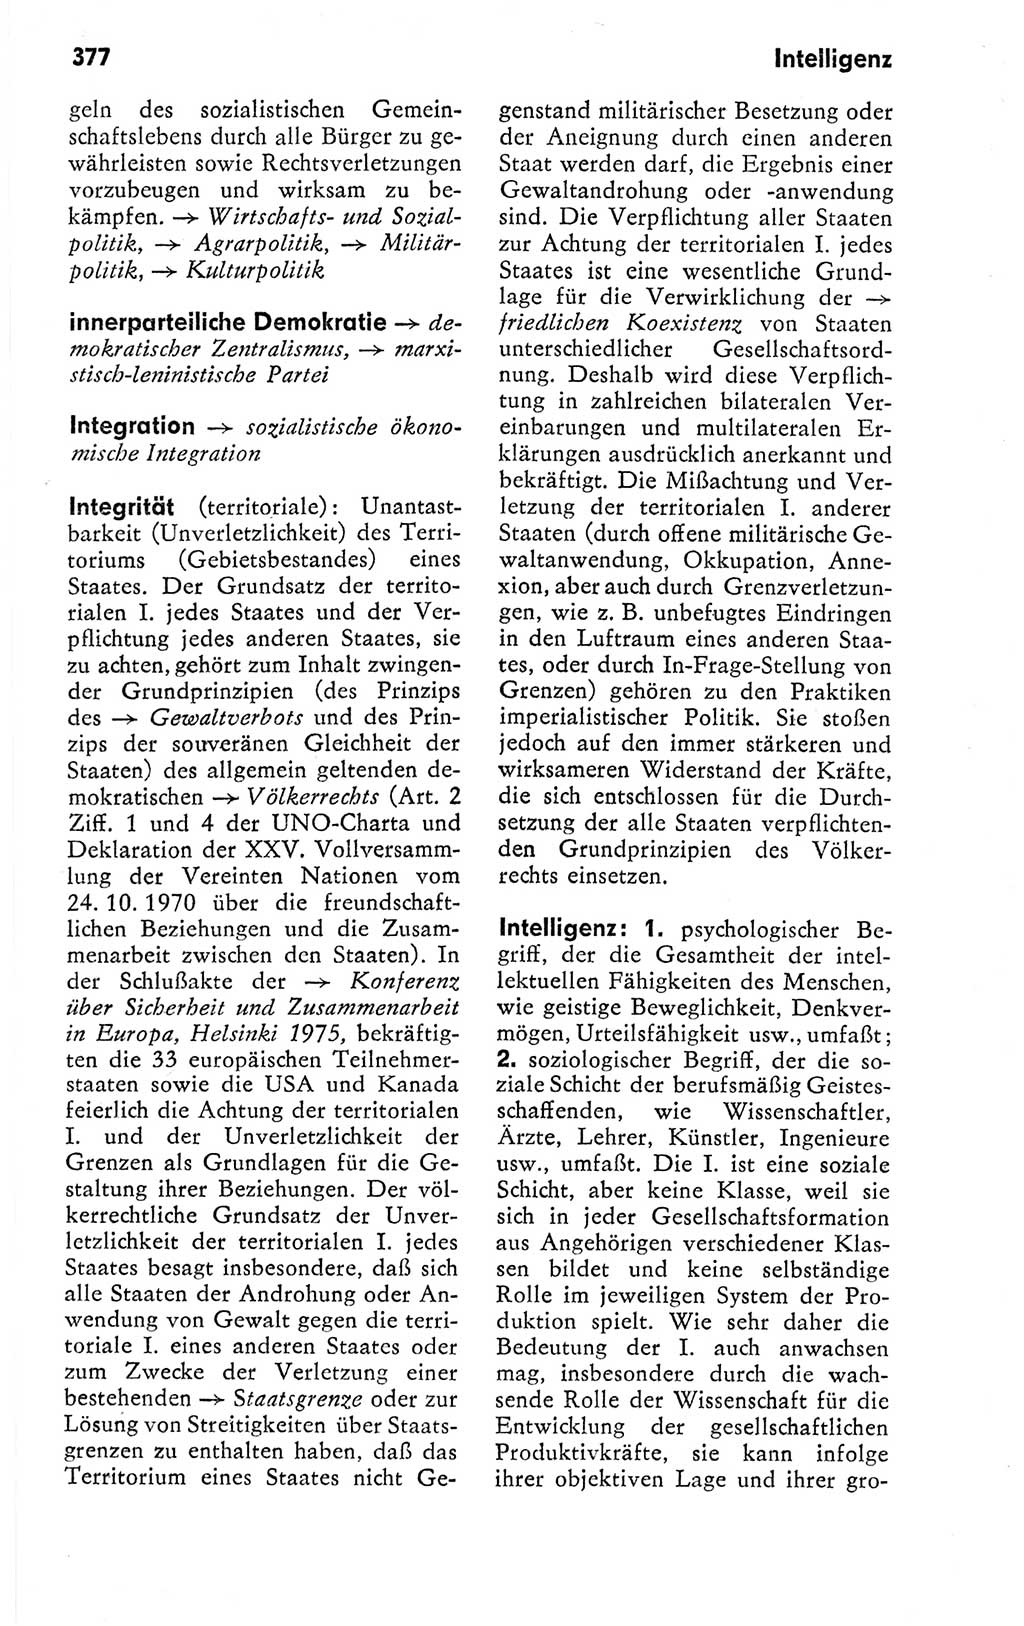 Kleines politisches Wörterbuch [Deutsche Demokratische Republik (DDR)] 1978, Seite 377 (Kl. pol. Wb. DDR 1978, S. 377)